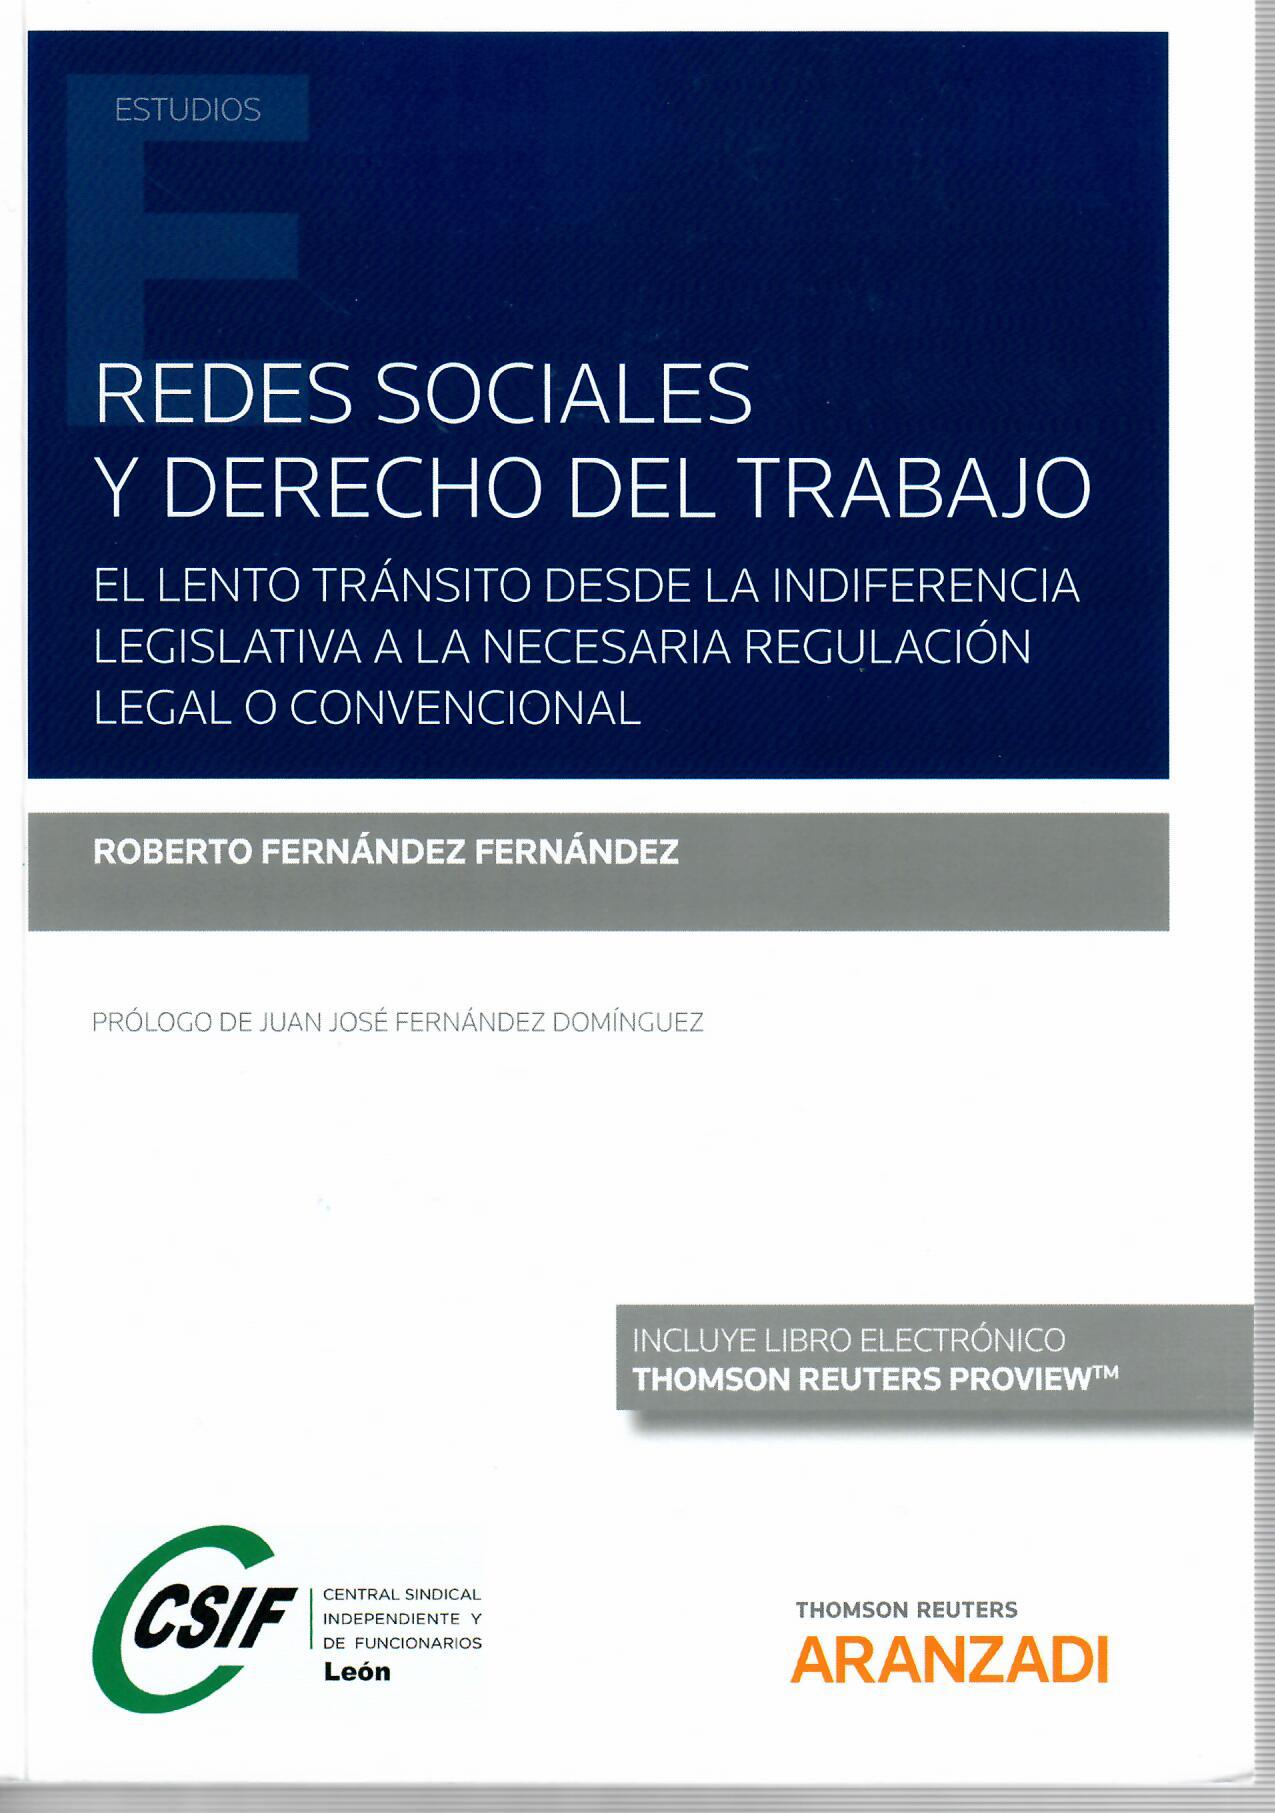 Imagen de portada del libro Redes sociales y derecho del trabajo